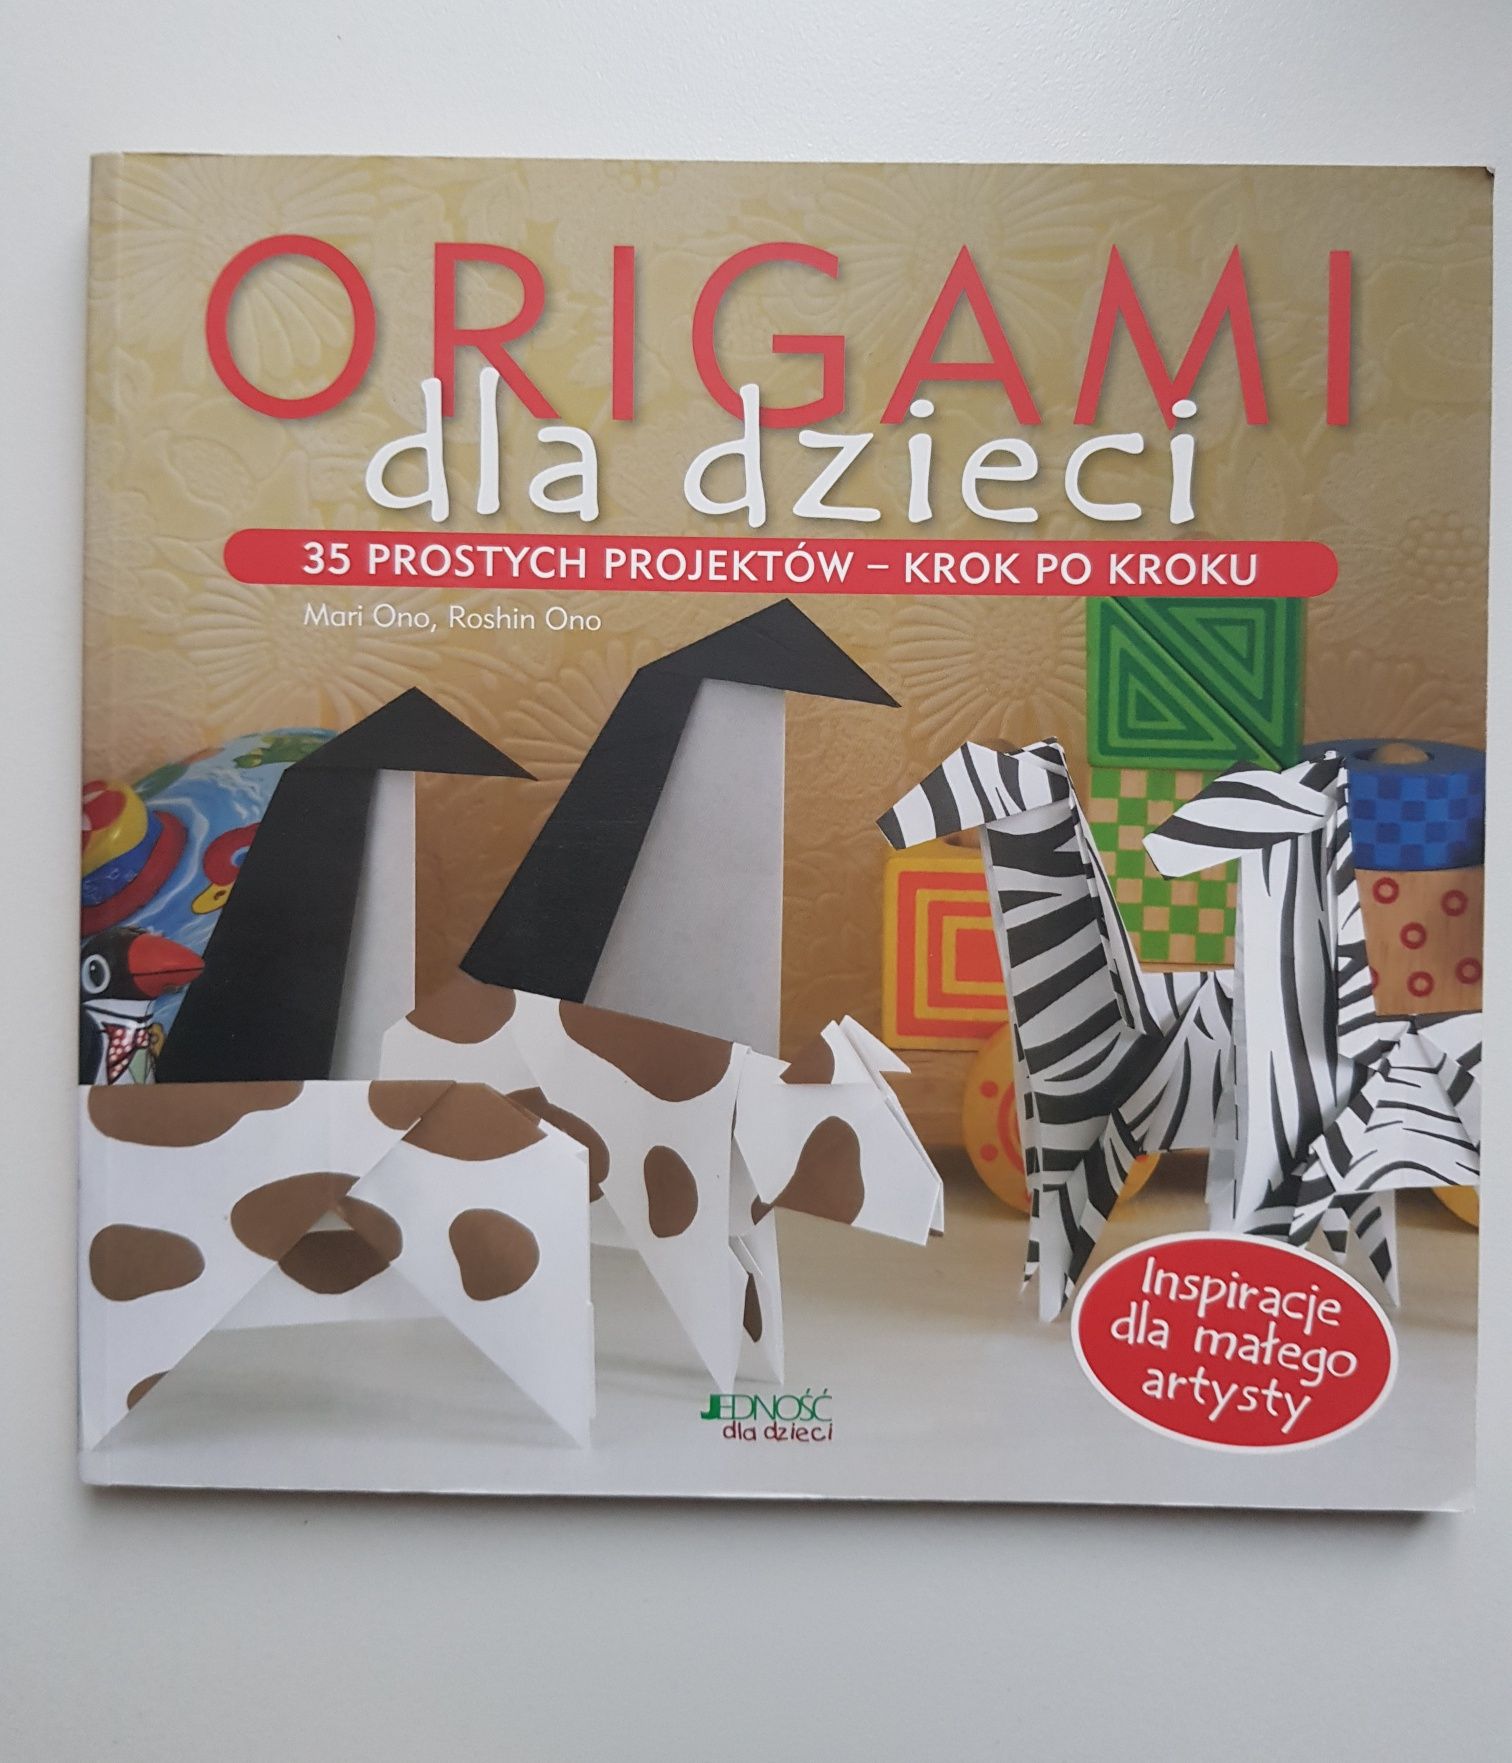 Origami dla dzieci, 35 prostych projektów krok po kroku